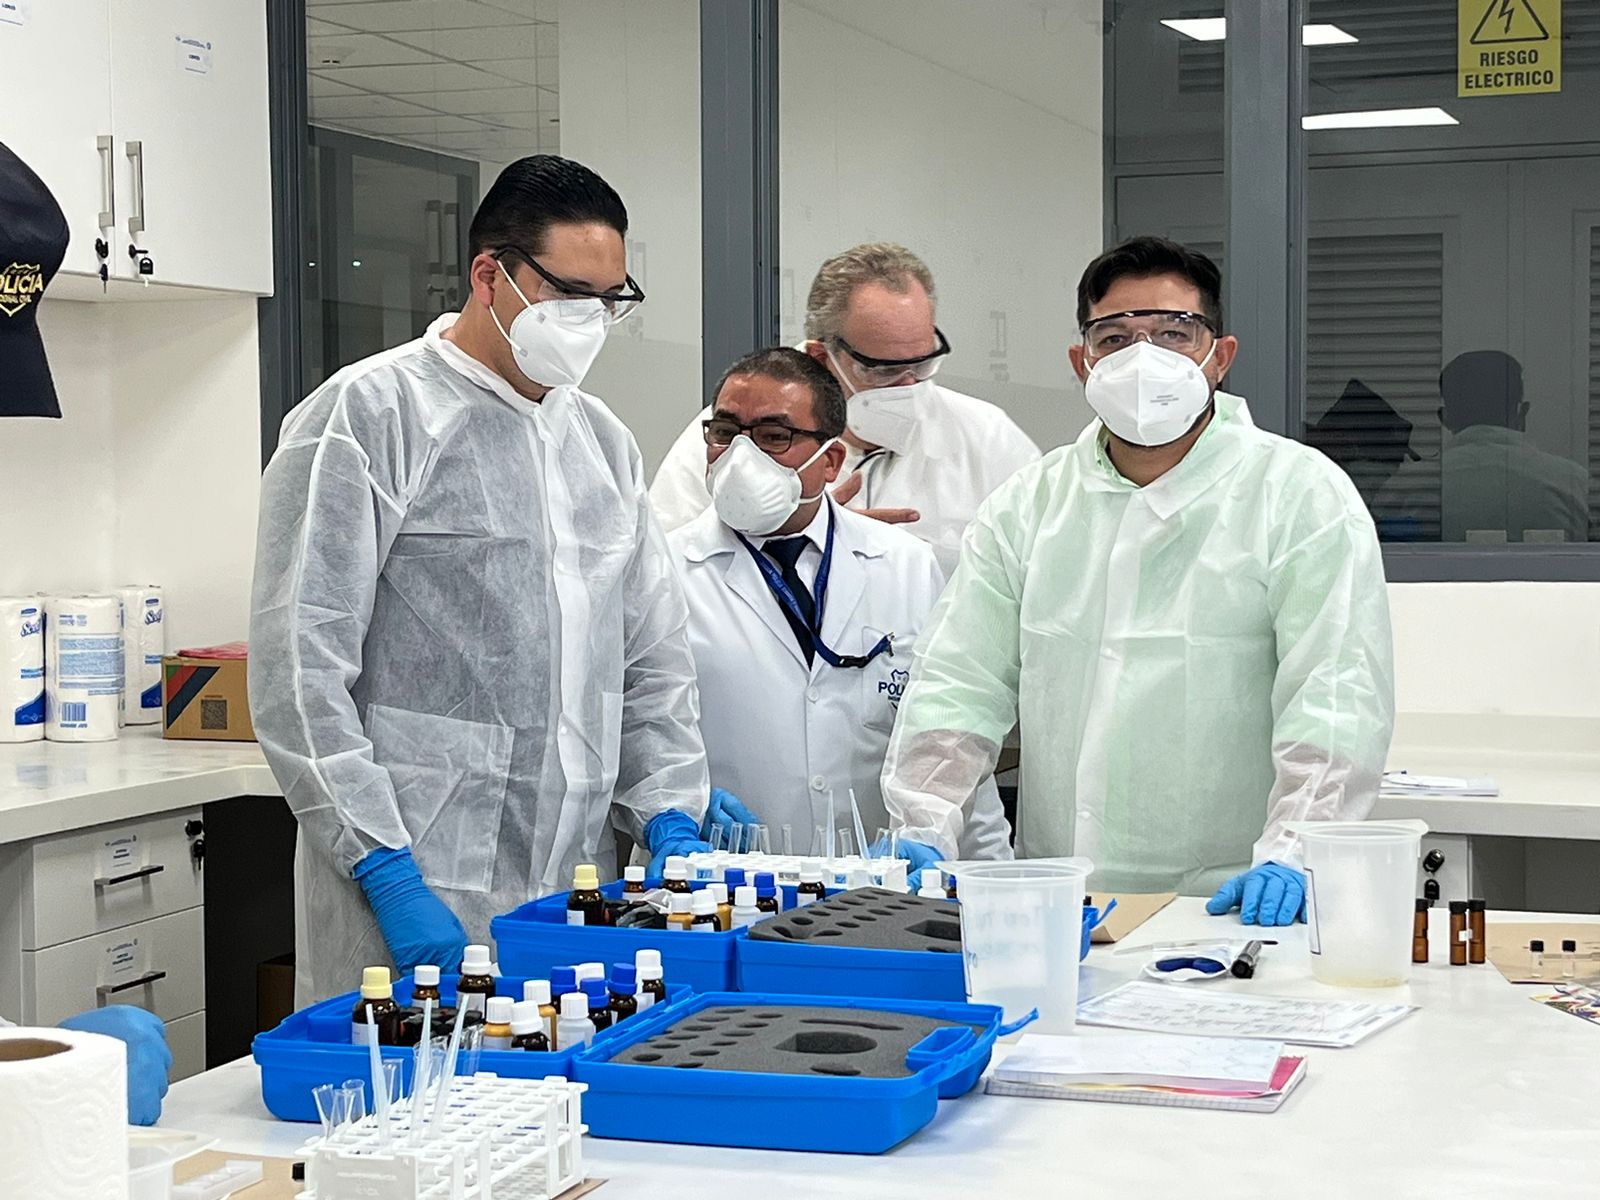 Participantes en taller sobre nuevas sustancias psicoactivas ofrecido por UNODC utilizando batas en un laboratorio.